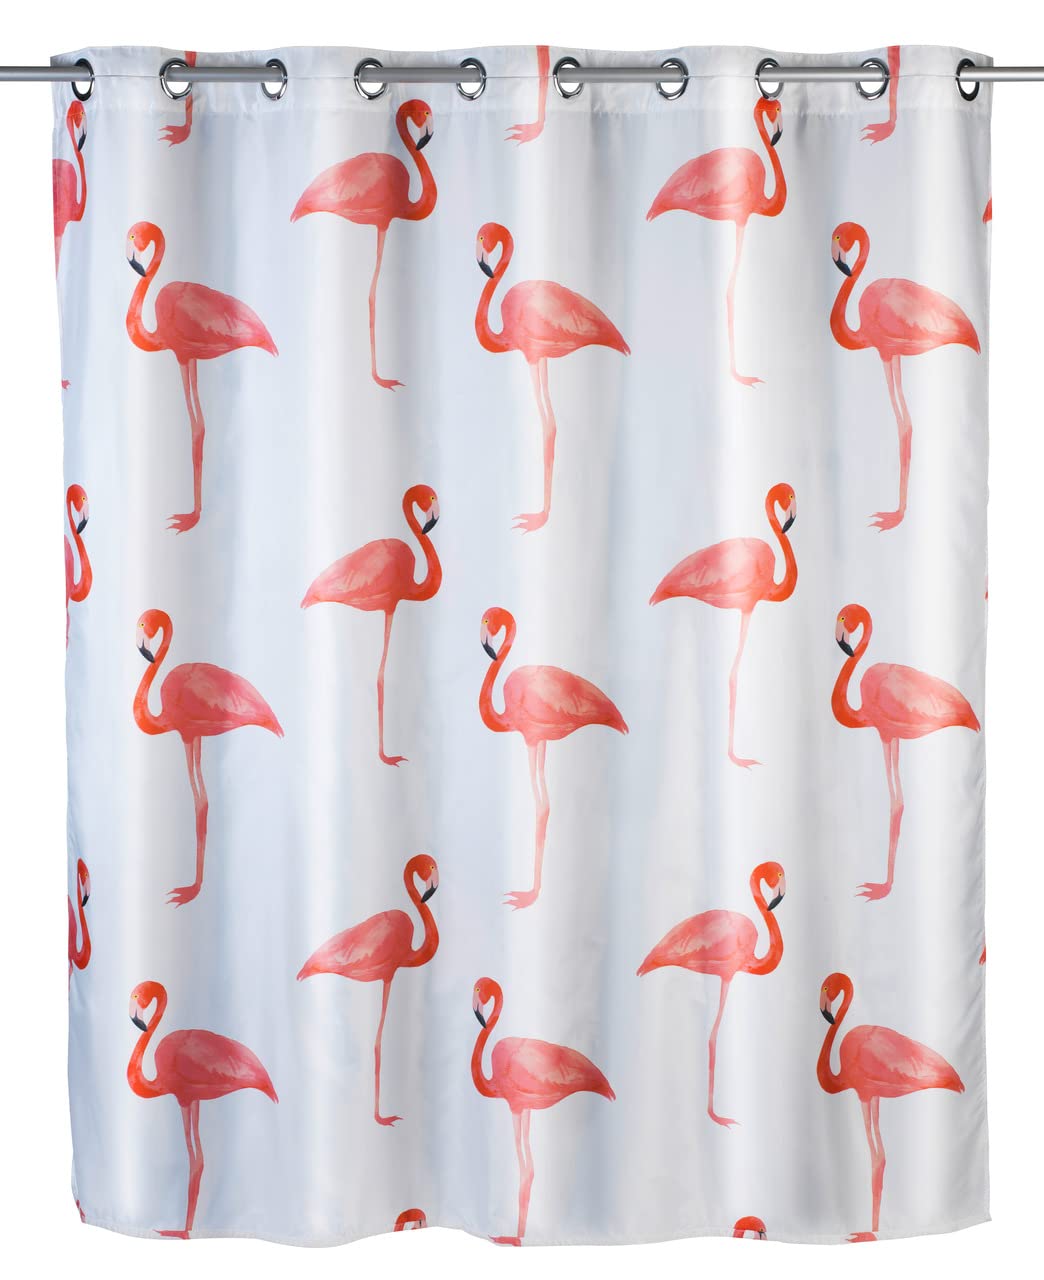 WENKO Anti-Schimmel Duschvorhang Flamingo Flex, Textil-Vorhang mit Antischimmel Effekt, große integrierte Ringe zur Befestigung an der Duschstange, waschbar,wasserabweisend, 180 x 200 cm